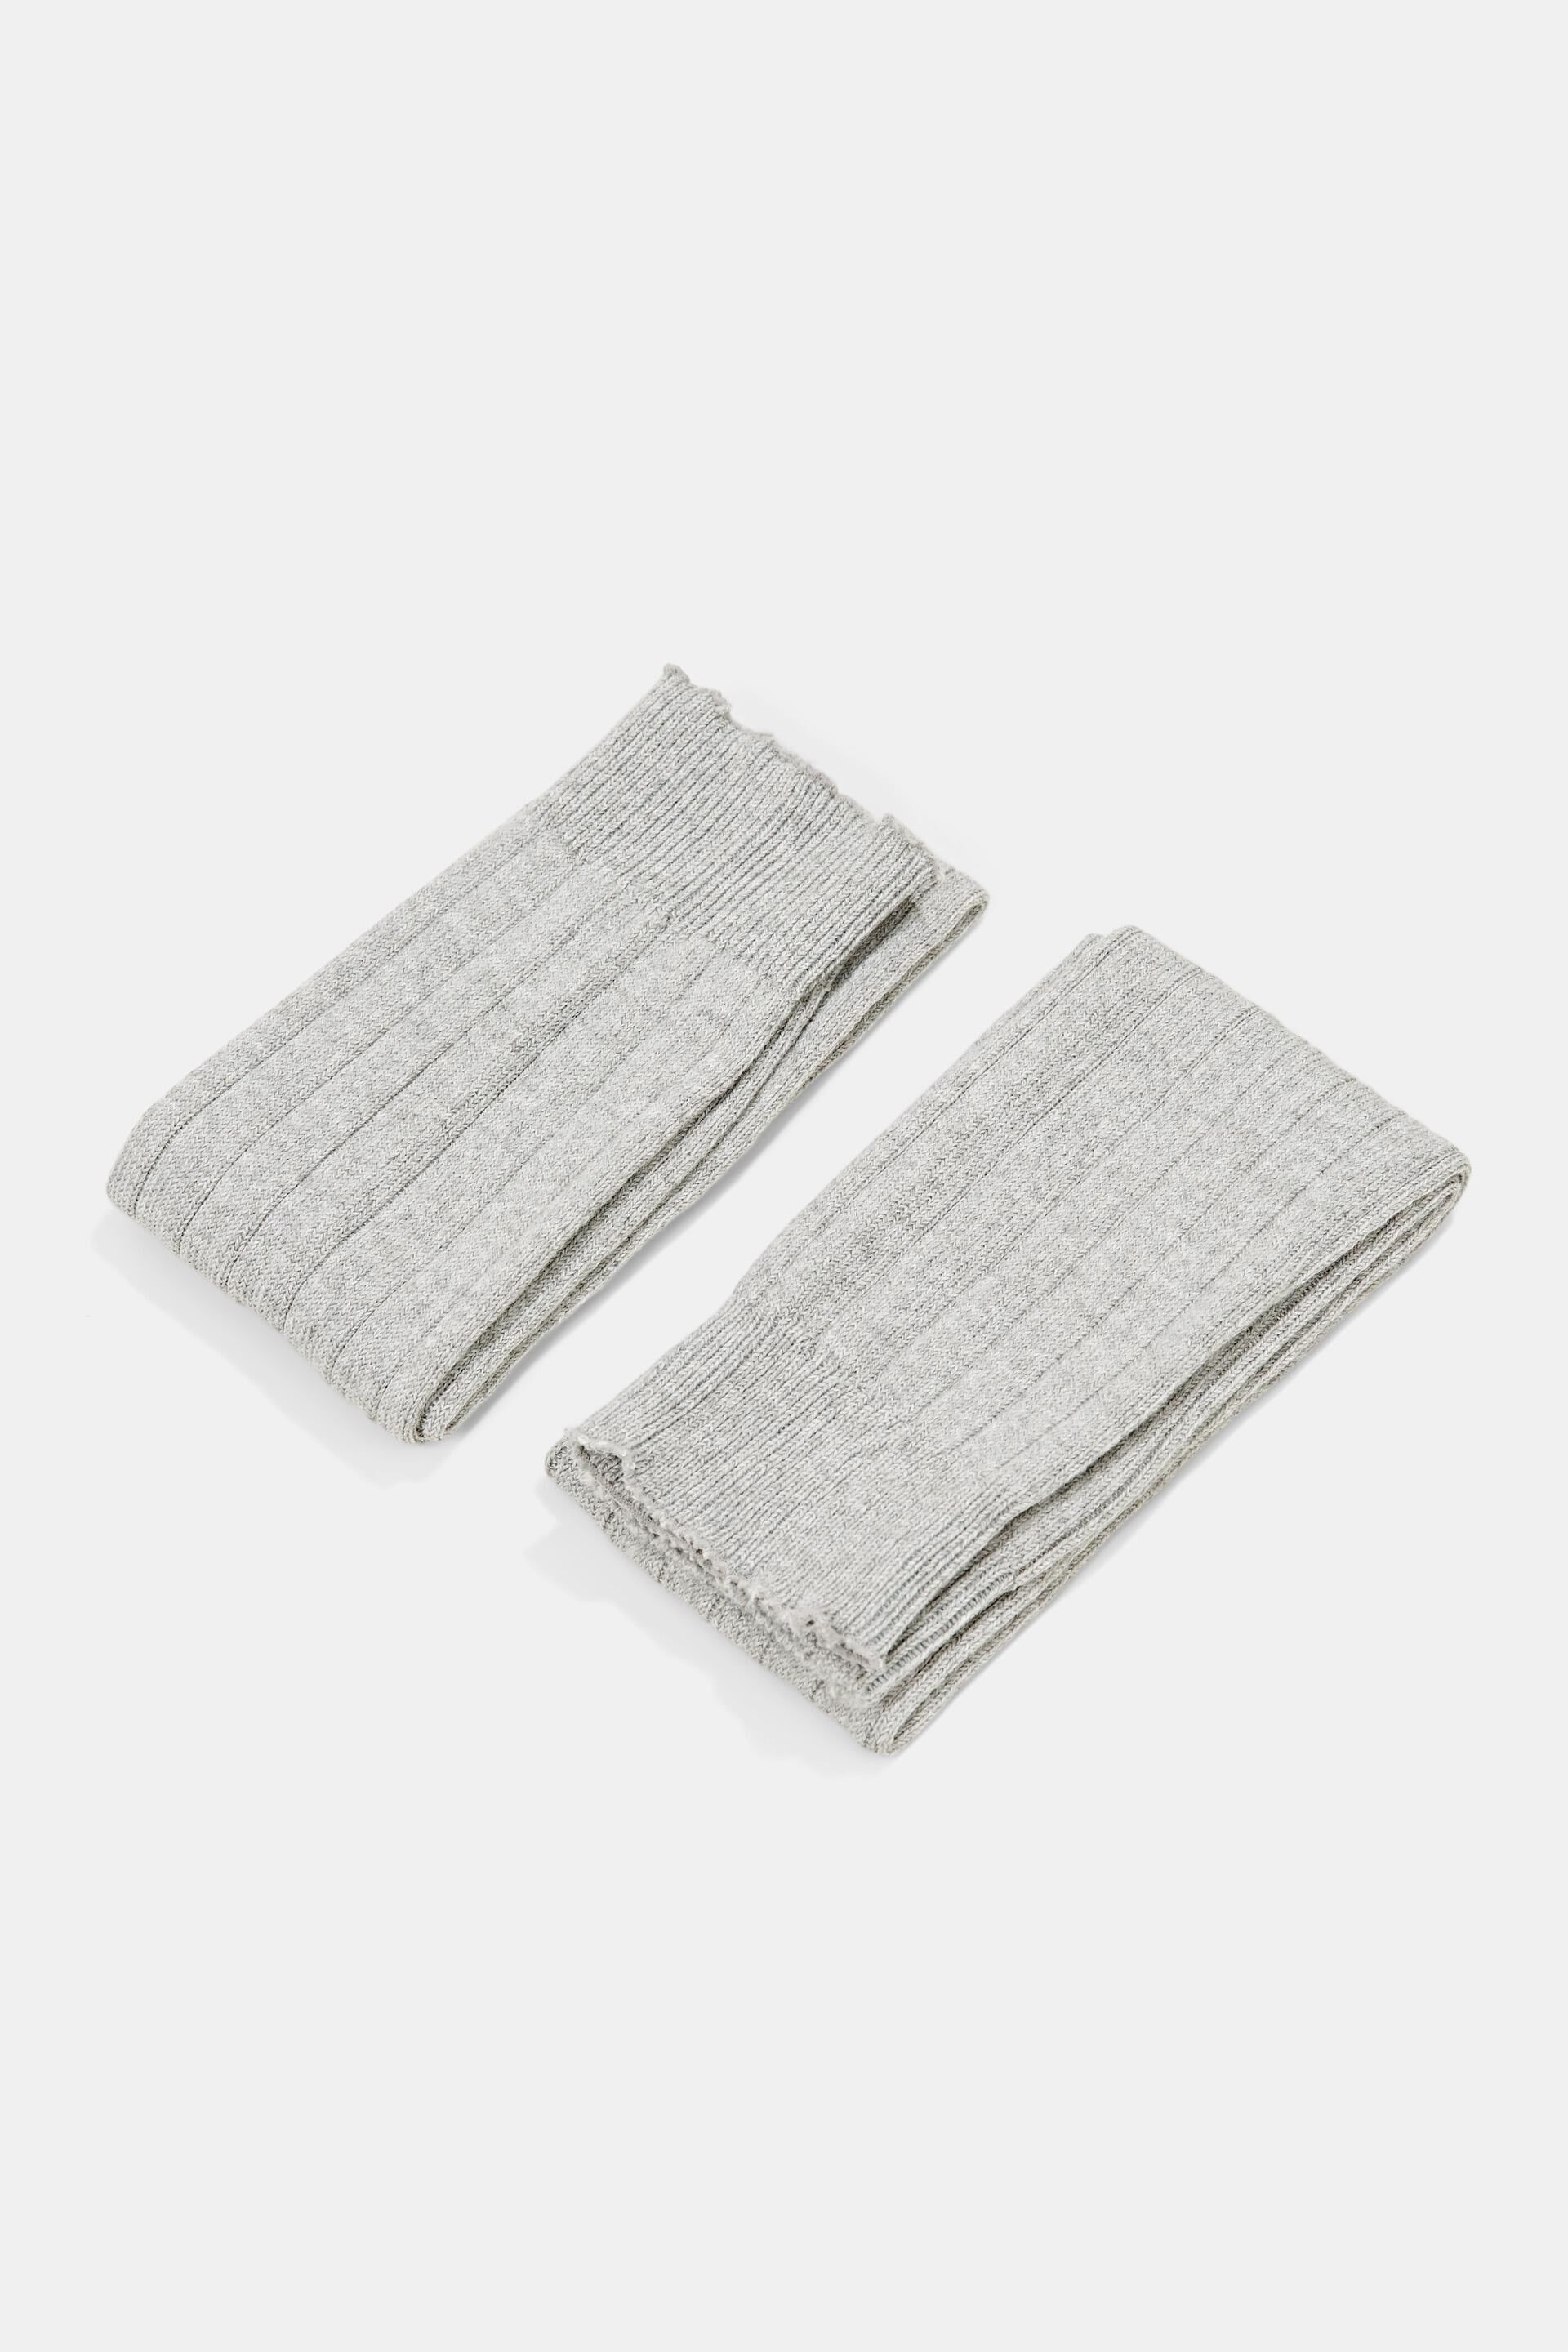 Esprit leg warmers rib blend: Wool knit